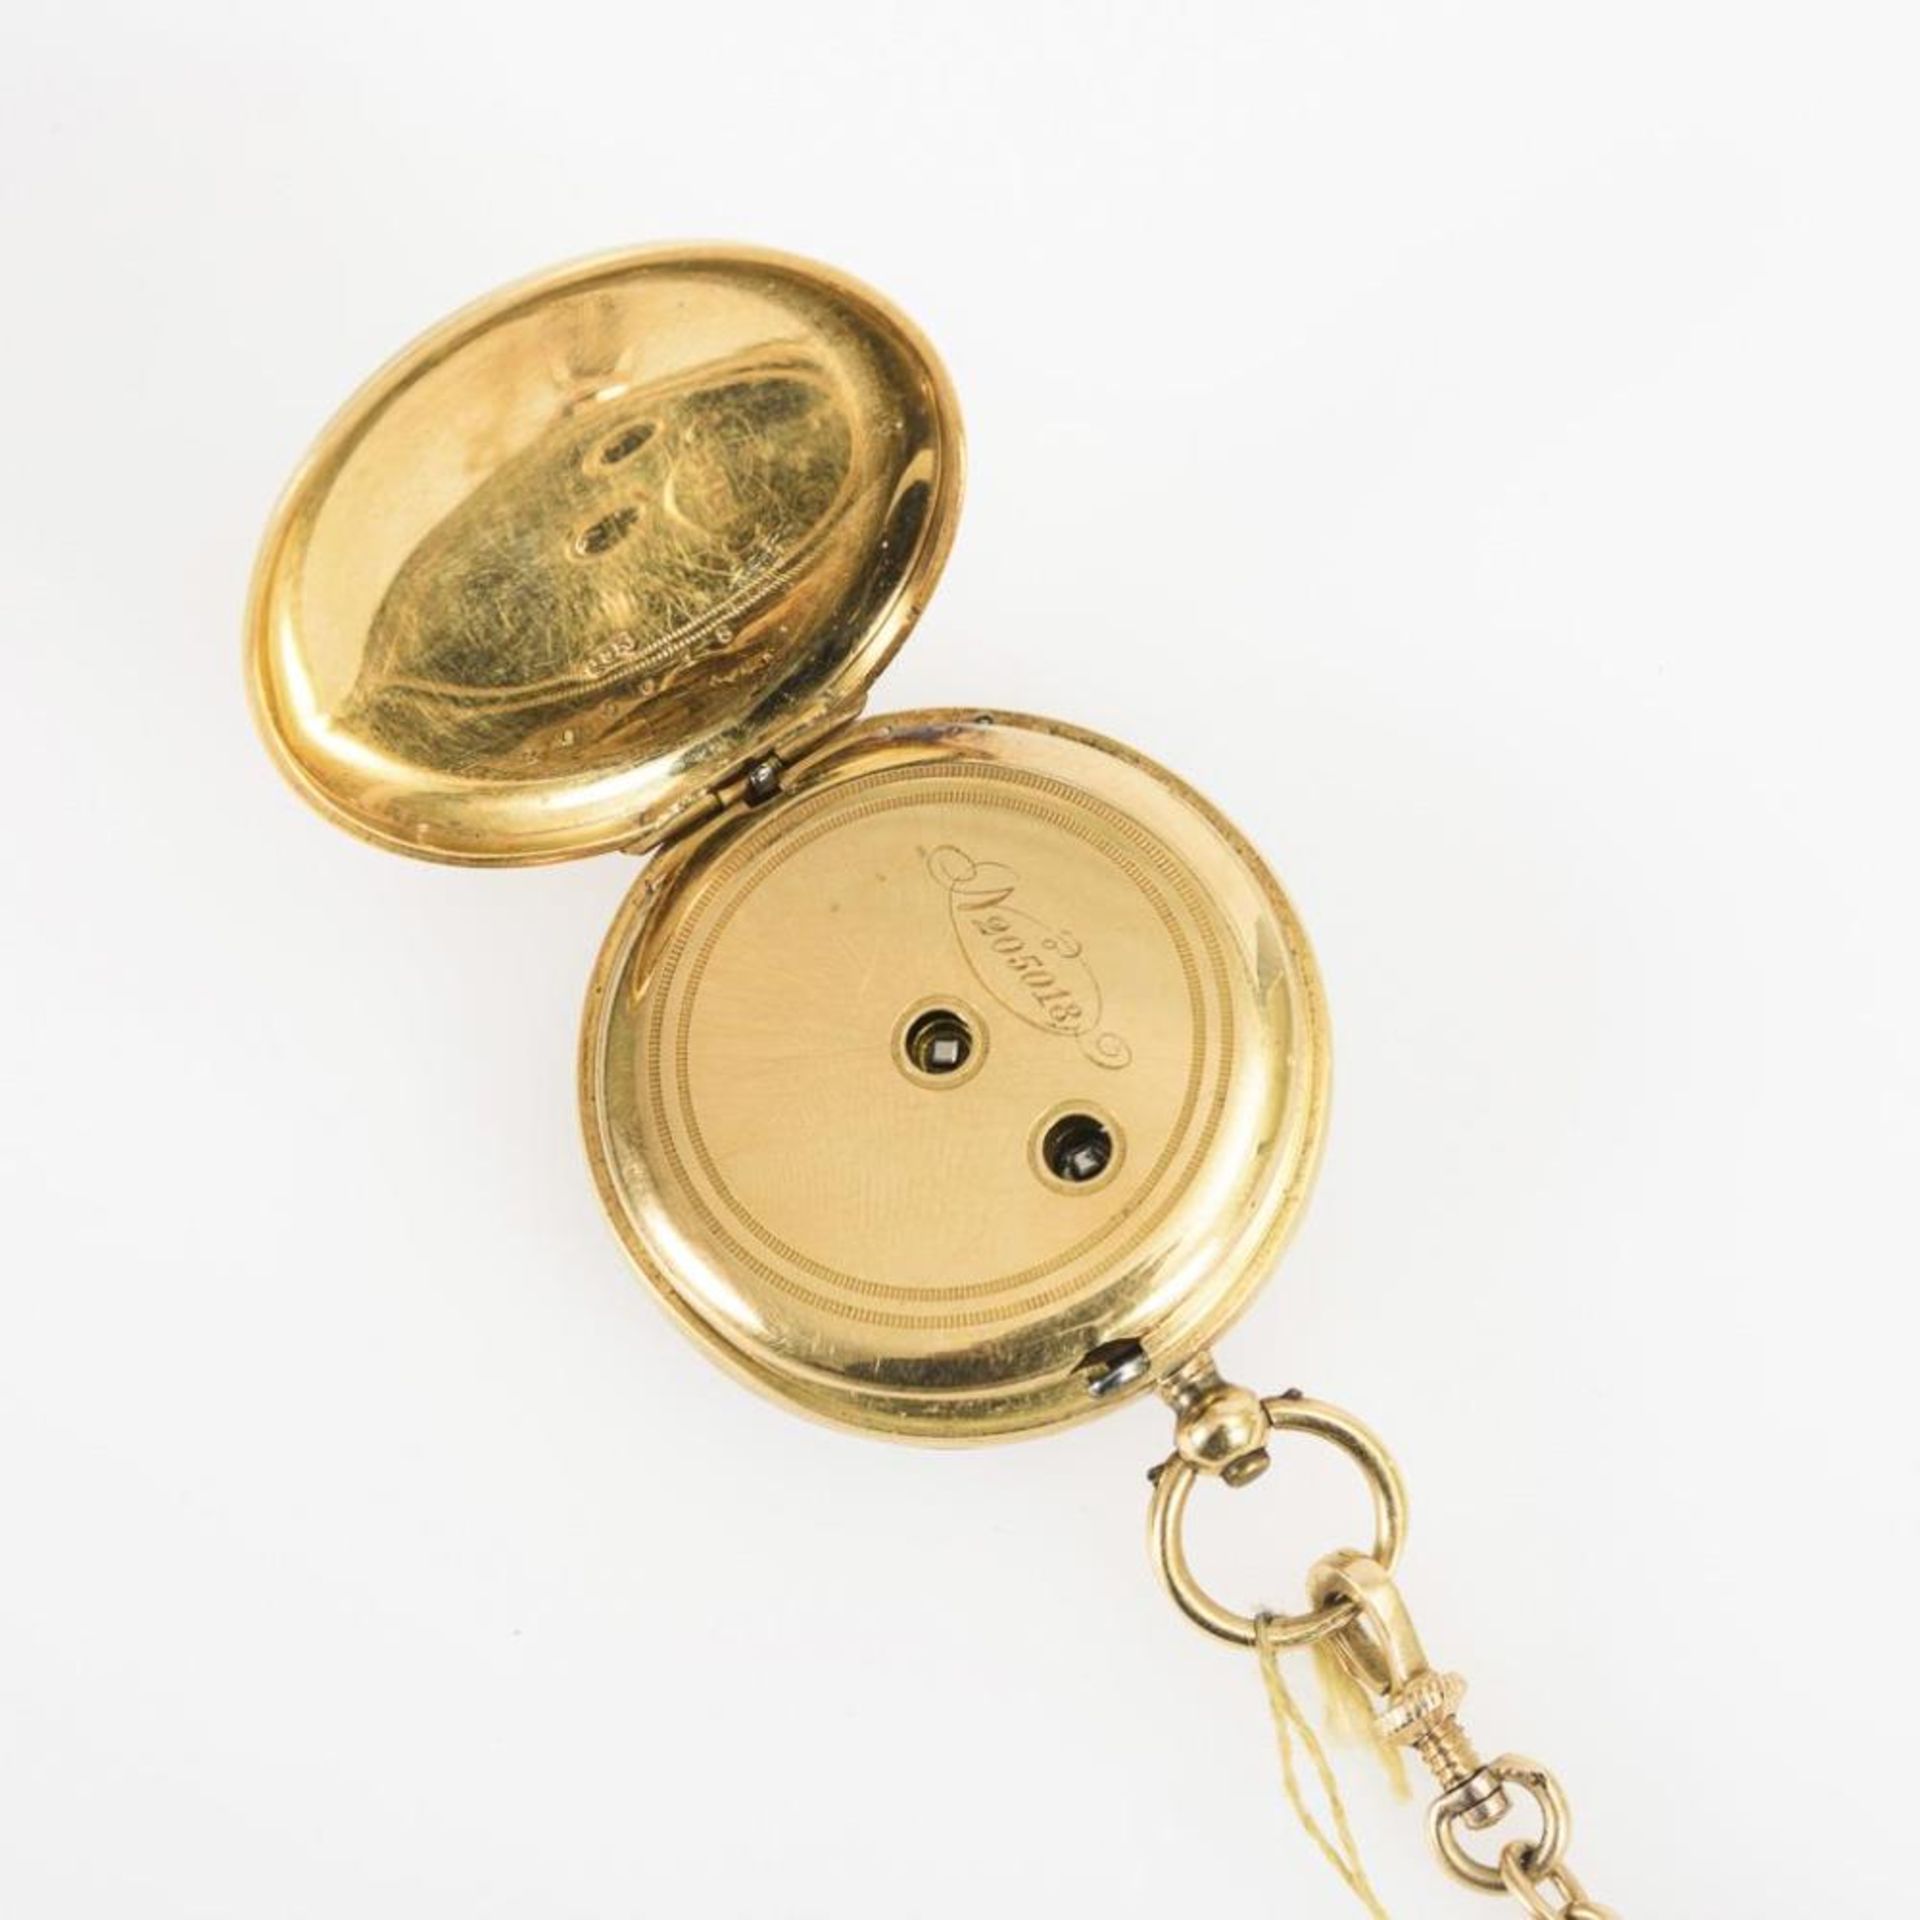 Goldene Damentaschenuhr an Uhrenkette. - Image 4 of 5